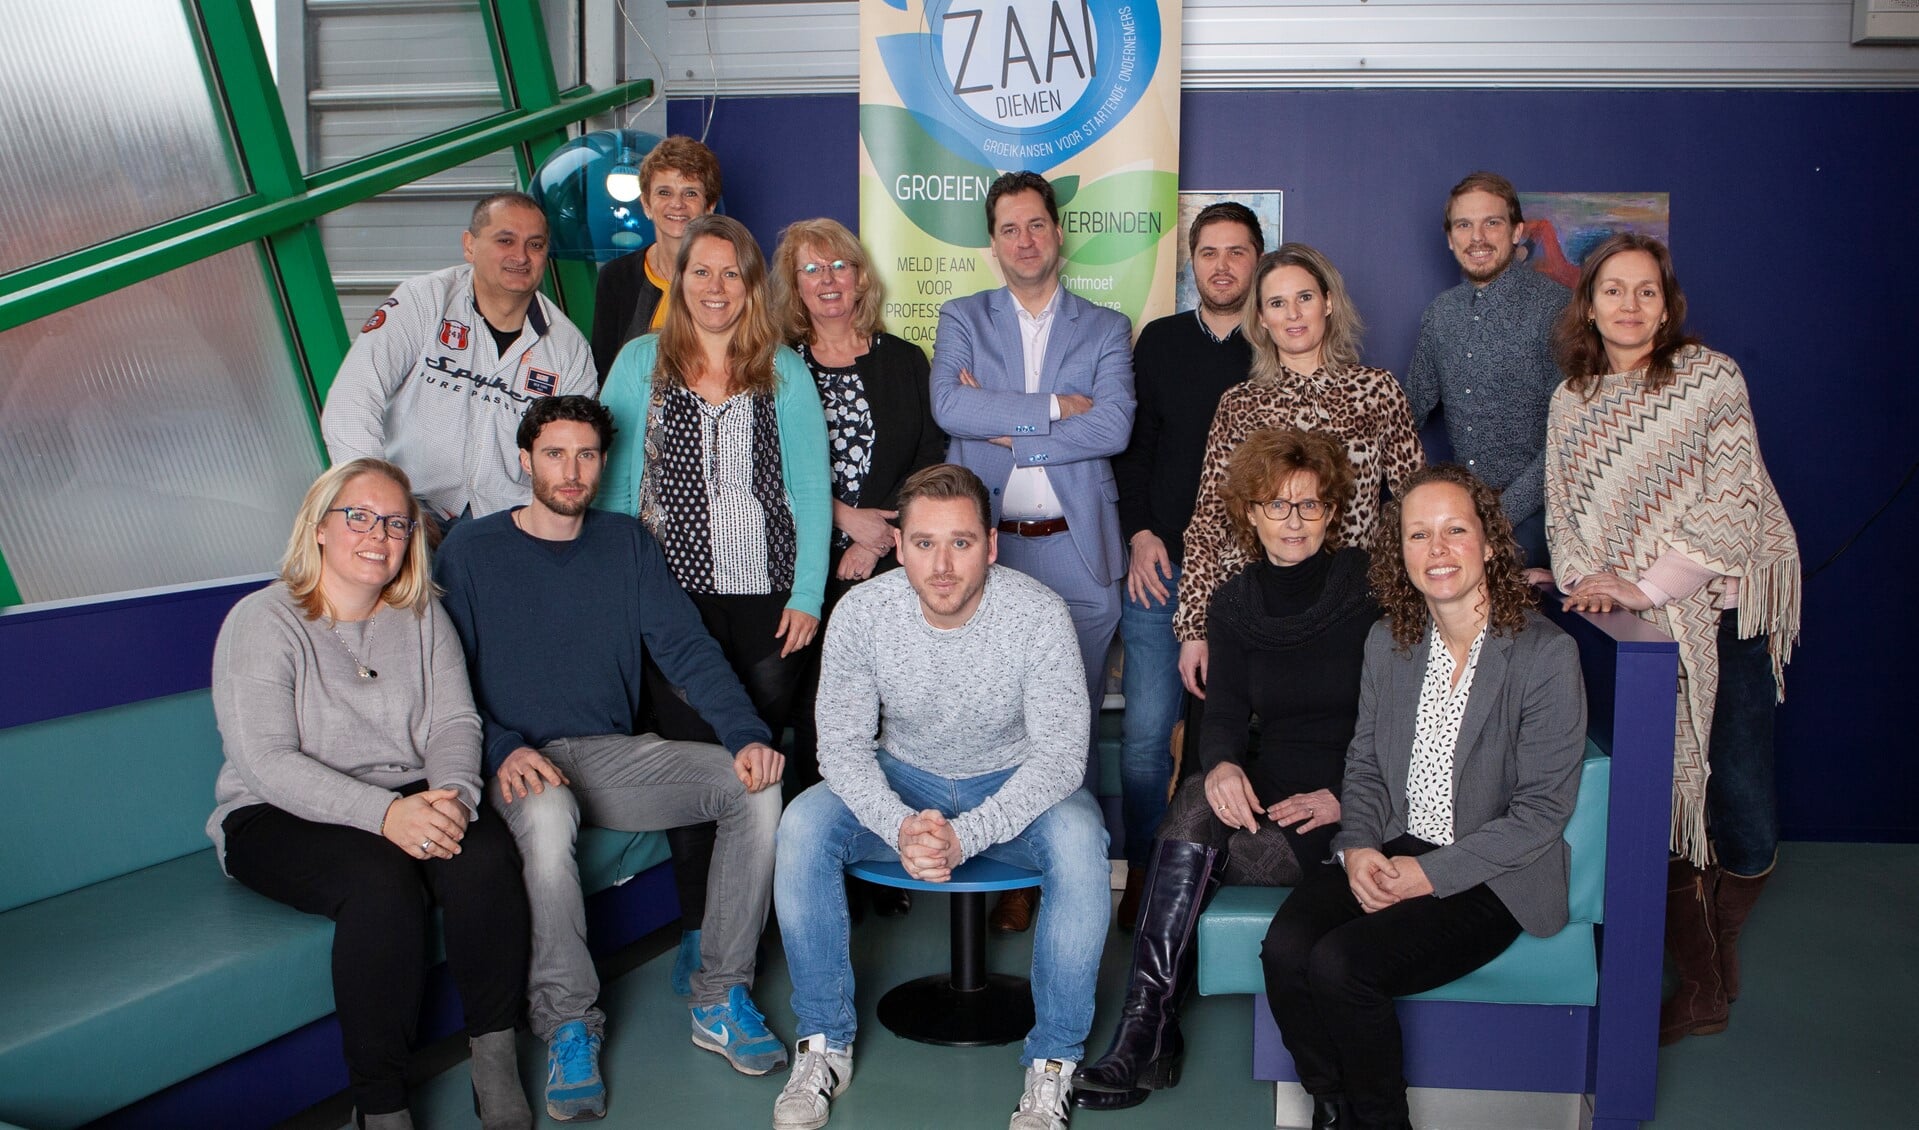 Deelnemers aan ZAAI in 2019.